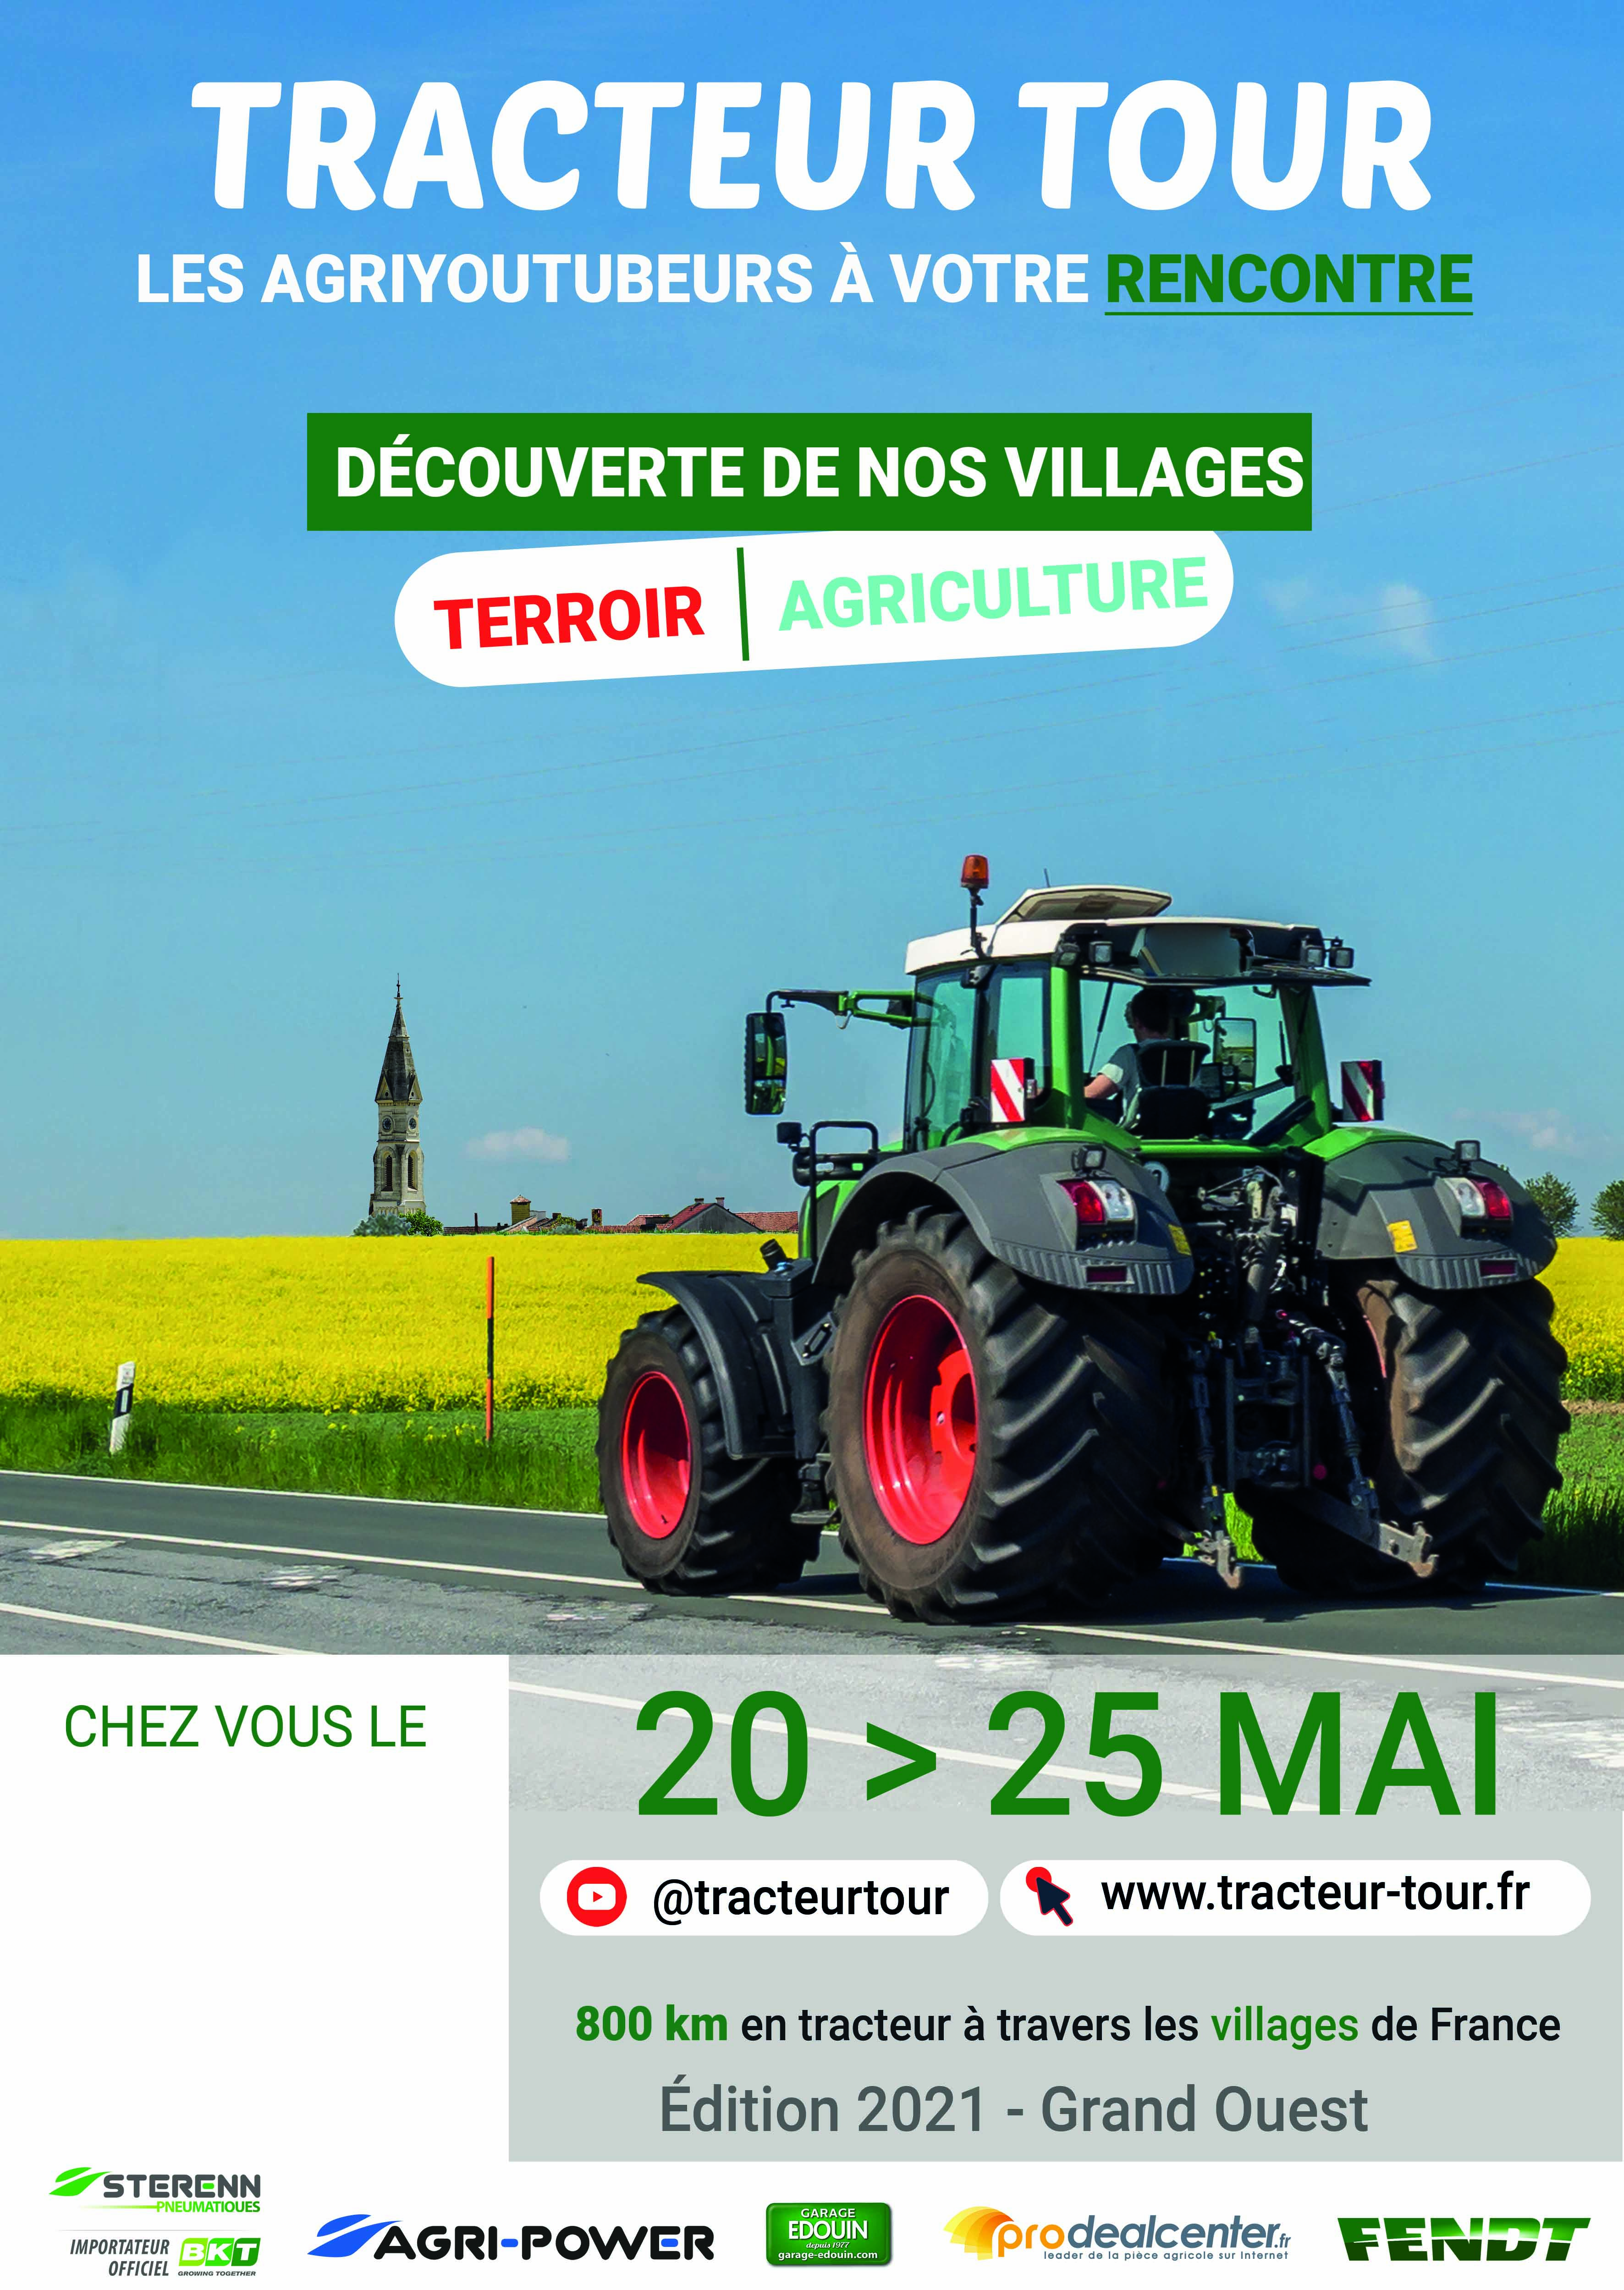 expo tracteur 2020 schedule